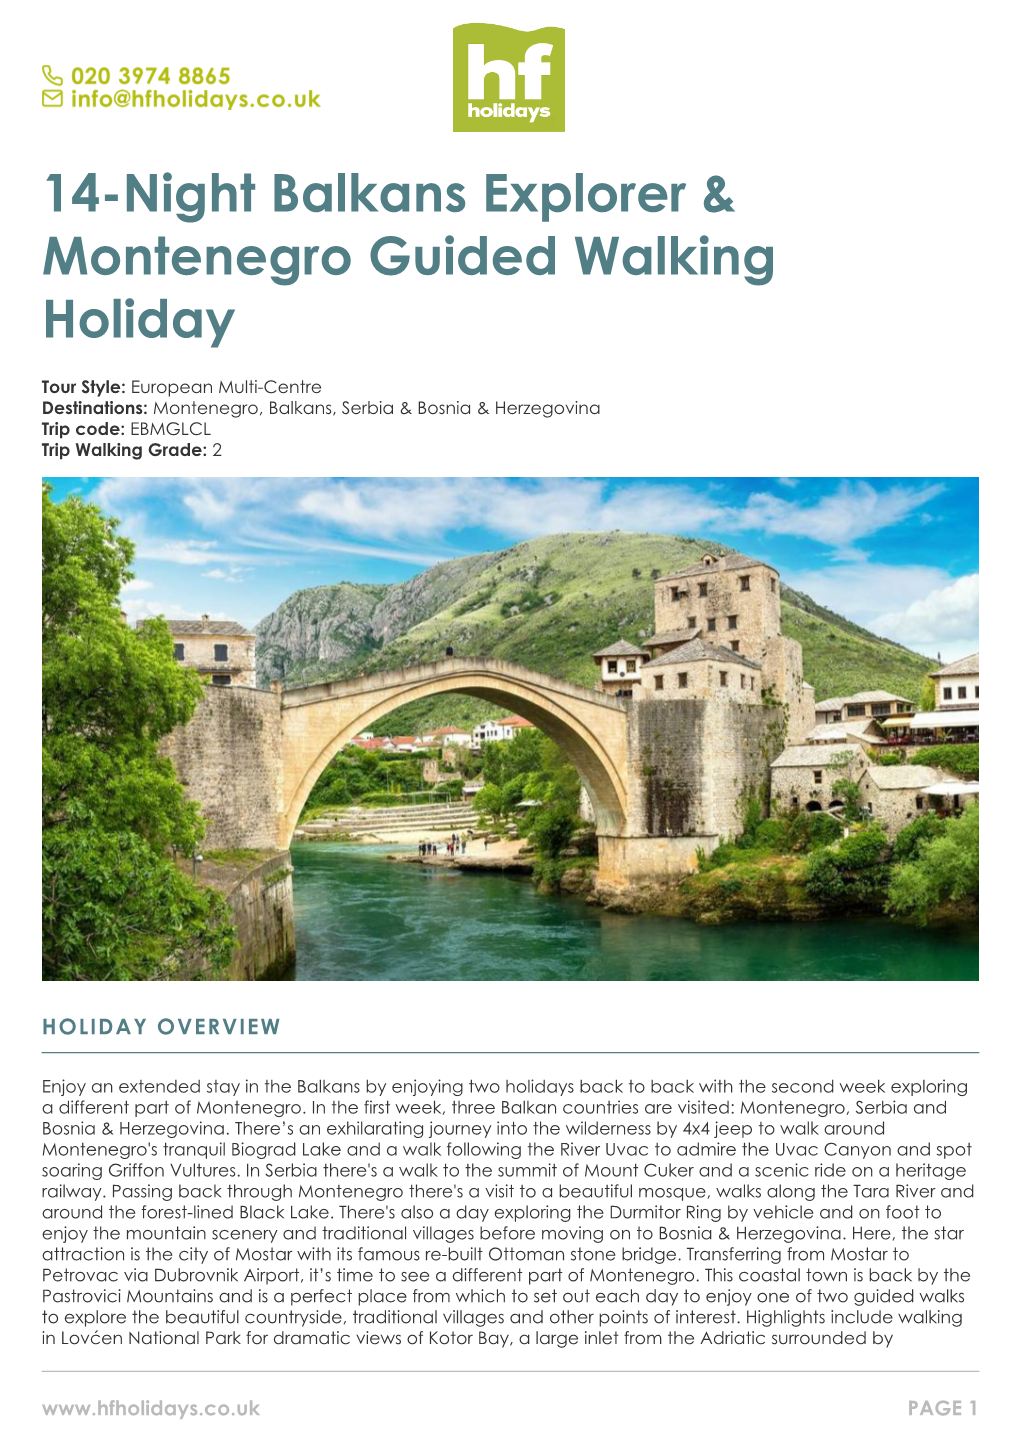 14-Night Balkans Explorer & Montenegro Guided Walking Holiday